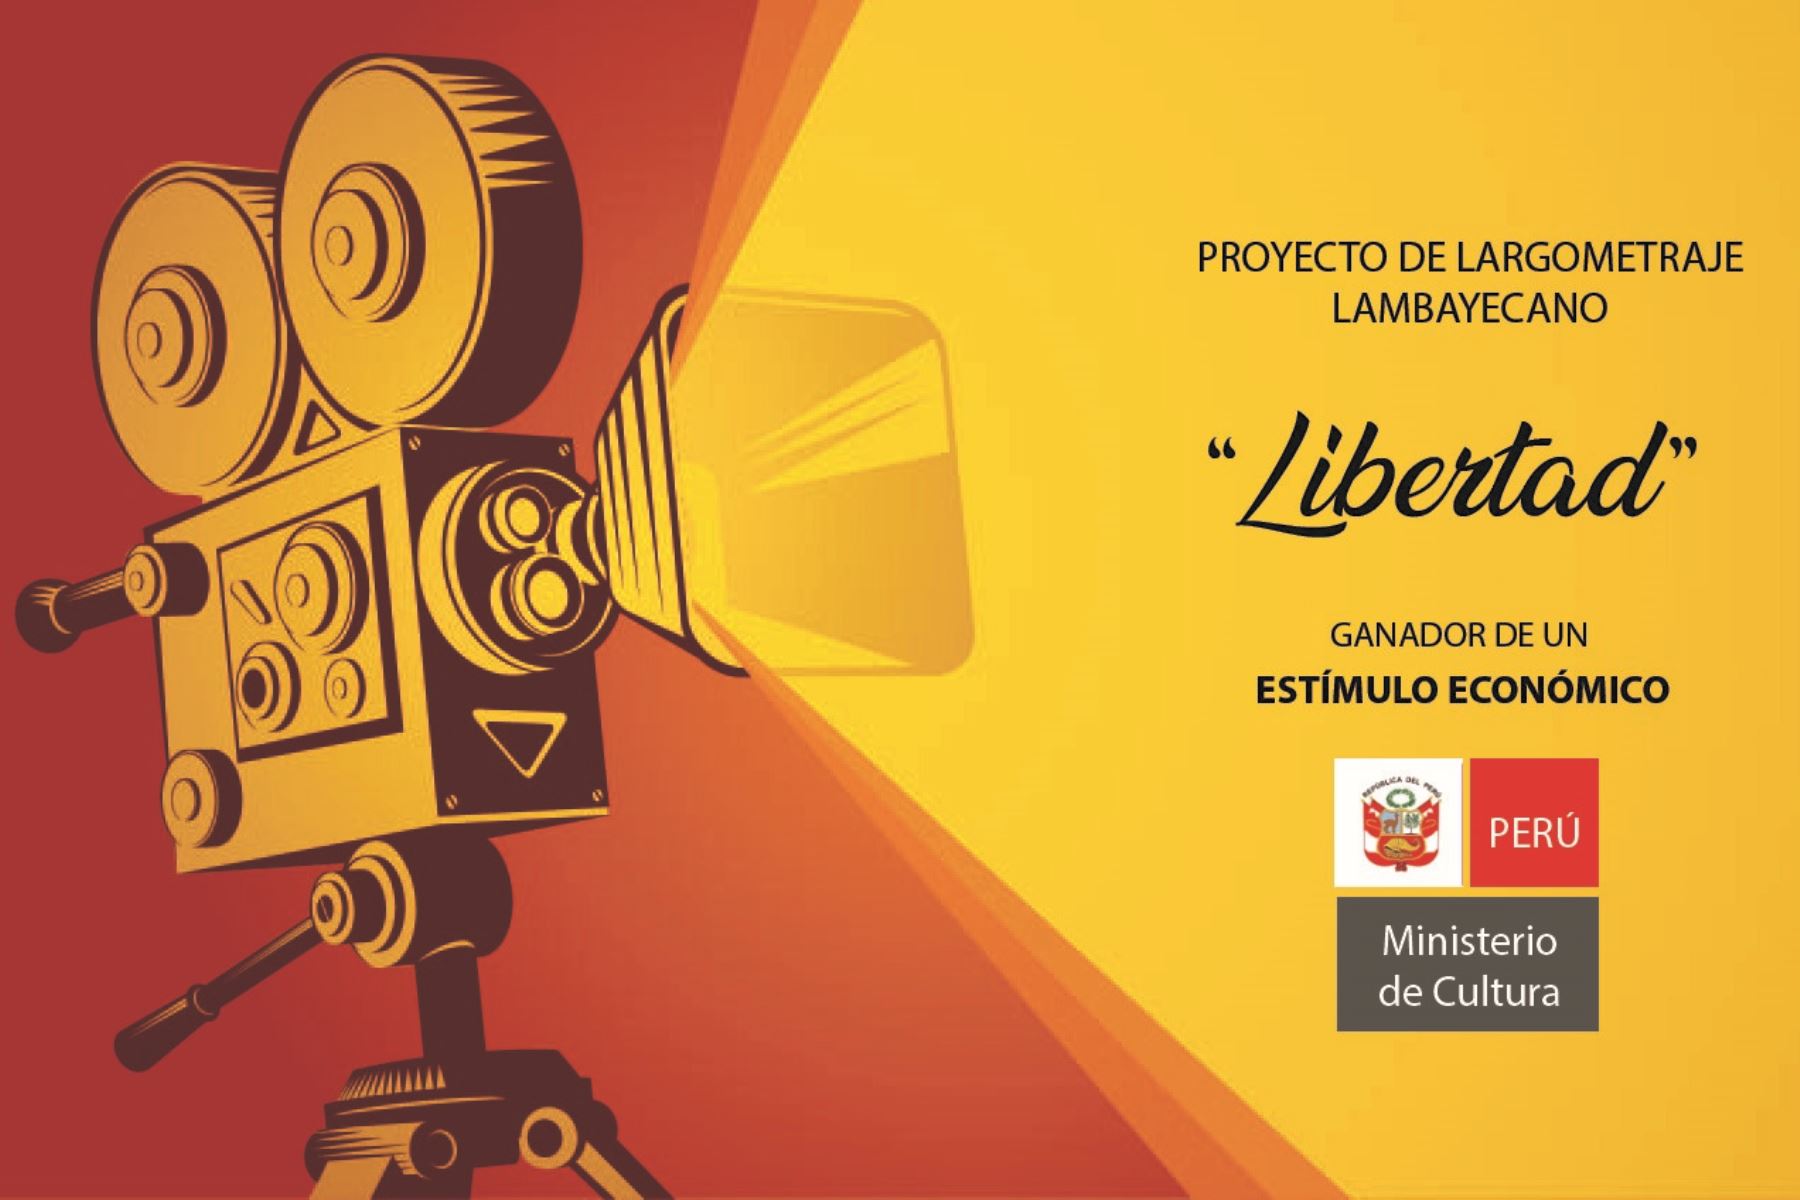 El Ministerio de Cultura otorgará estímulo económico para la producción del largometraje 